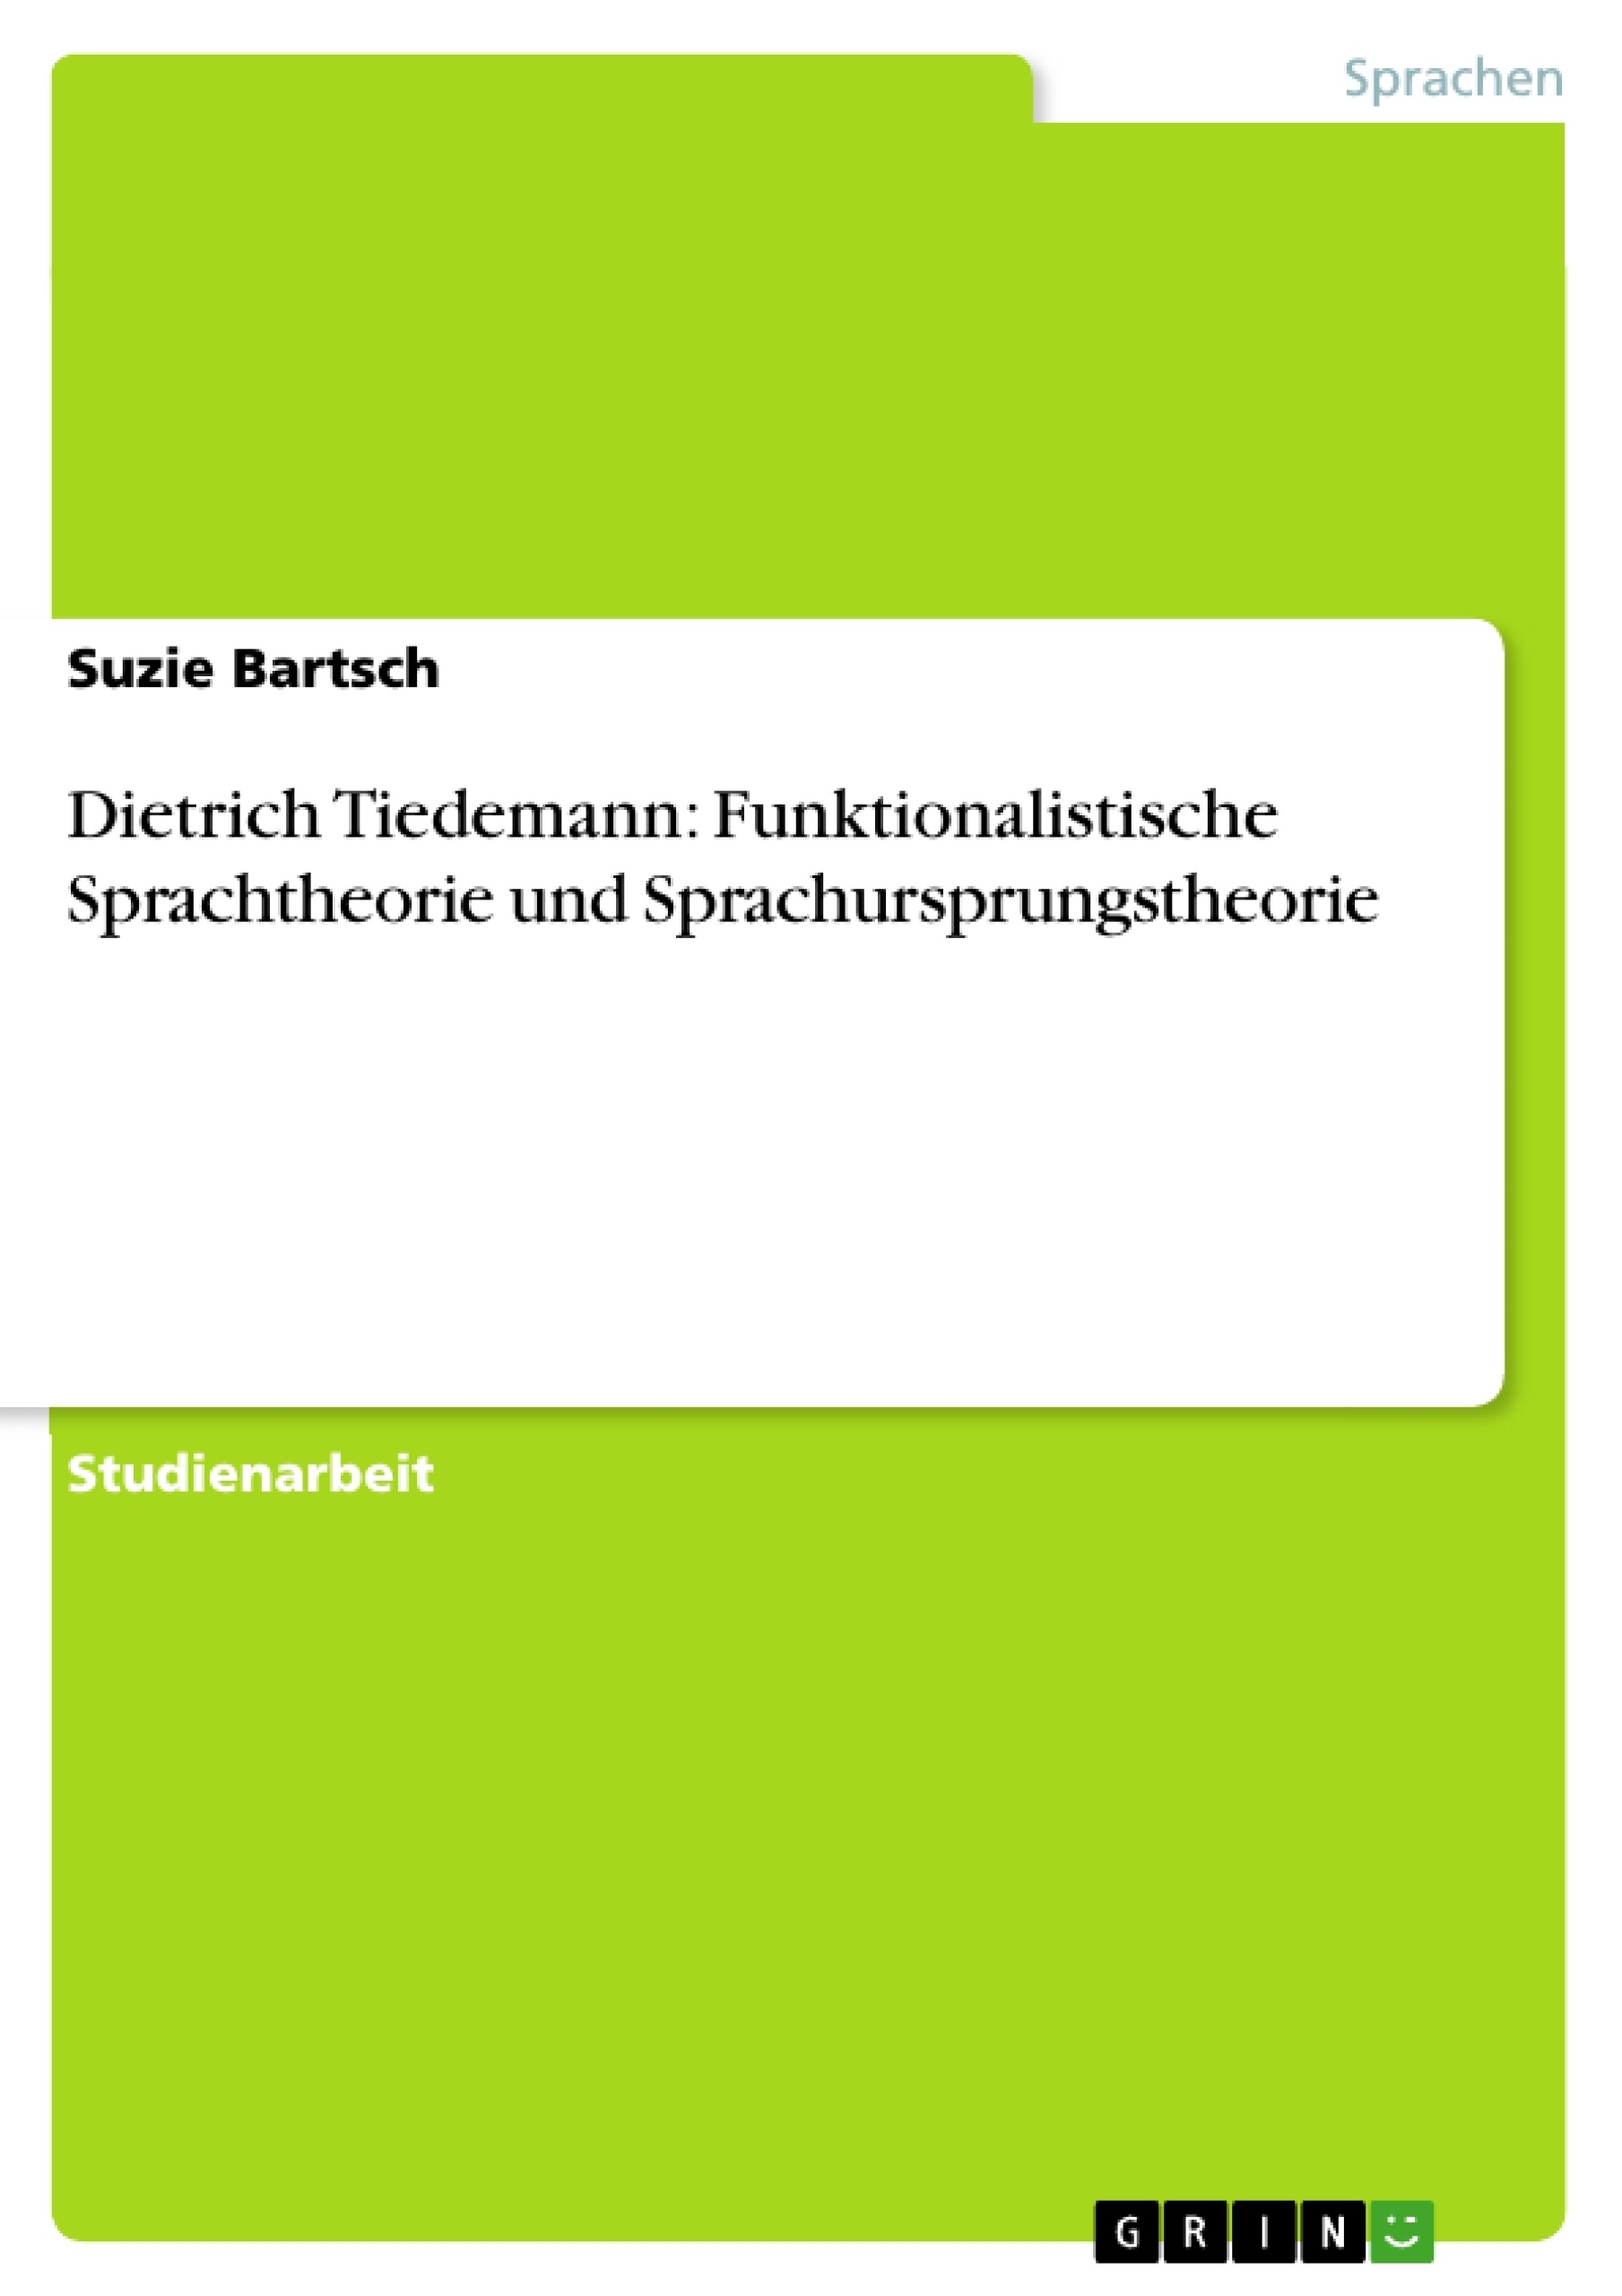 Title: Dietrich Tiedemann: Funktionalistische Sprachtheorie und Sprachursprungstheorie